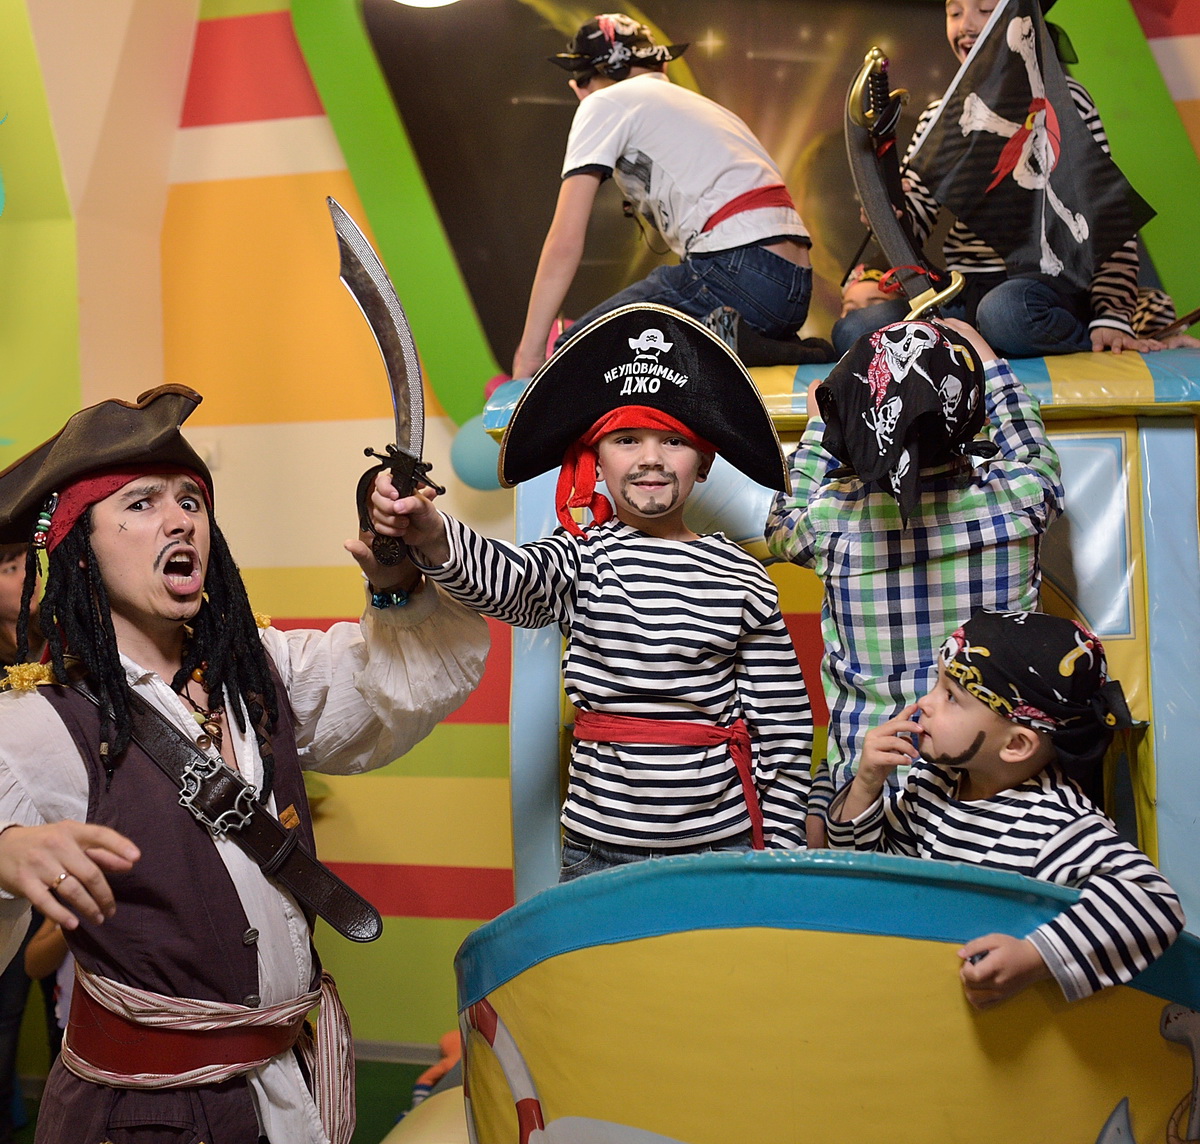 Костюм пирата для детей и взрослых